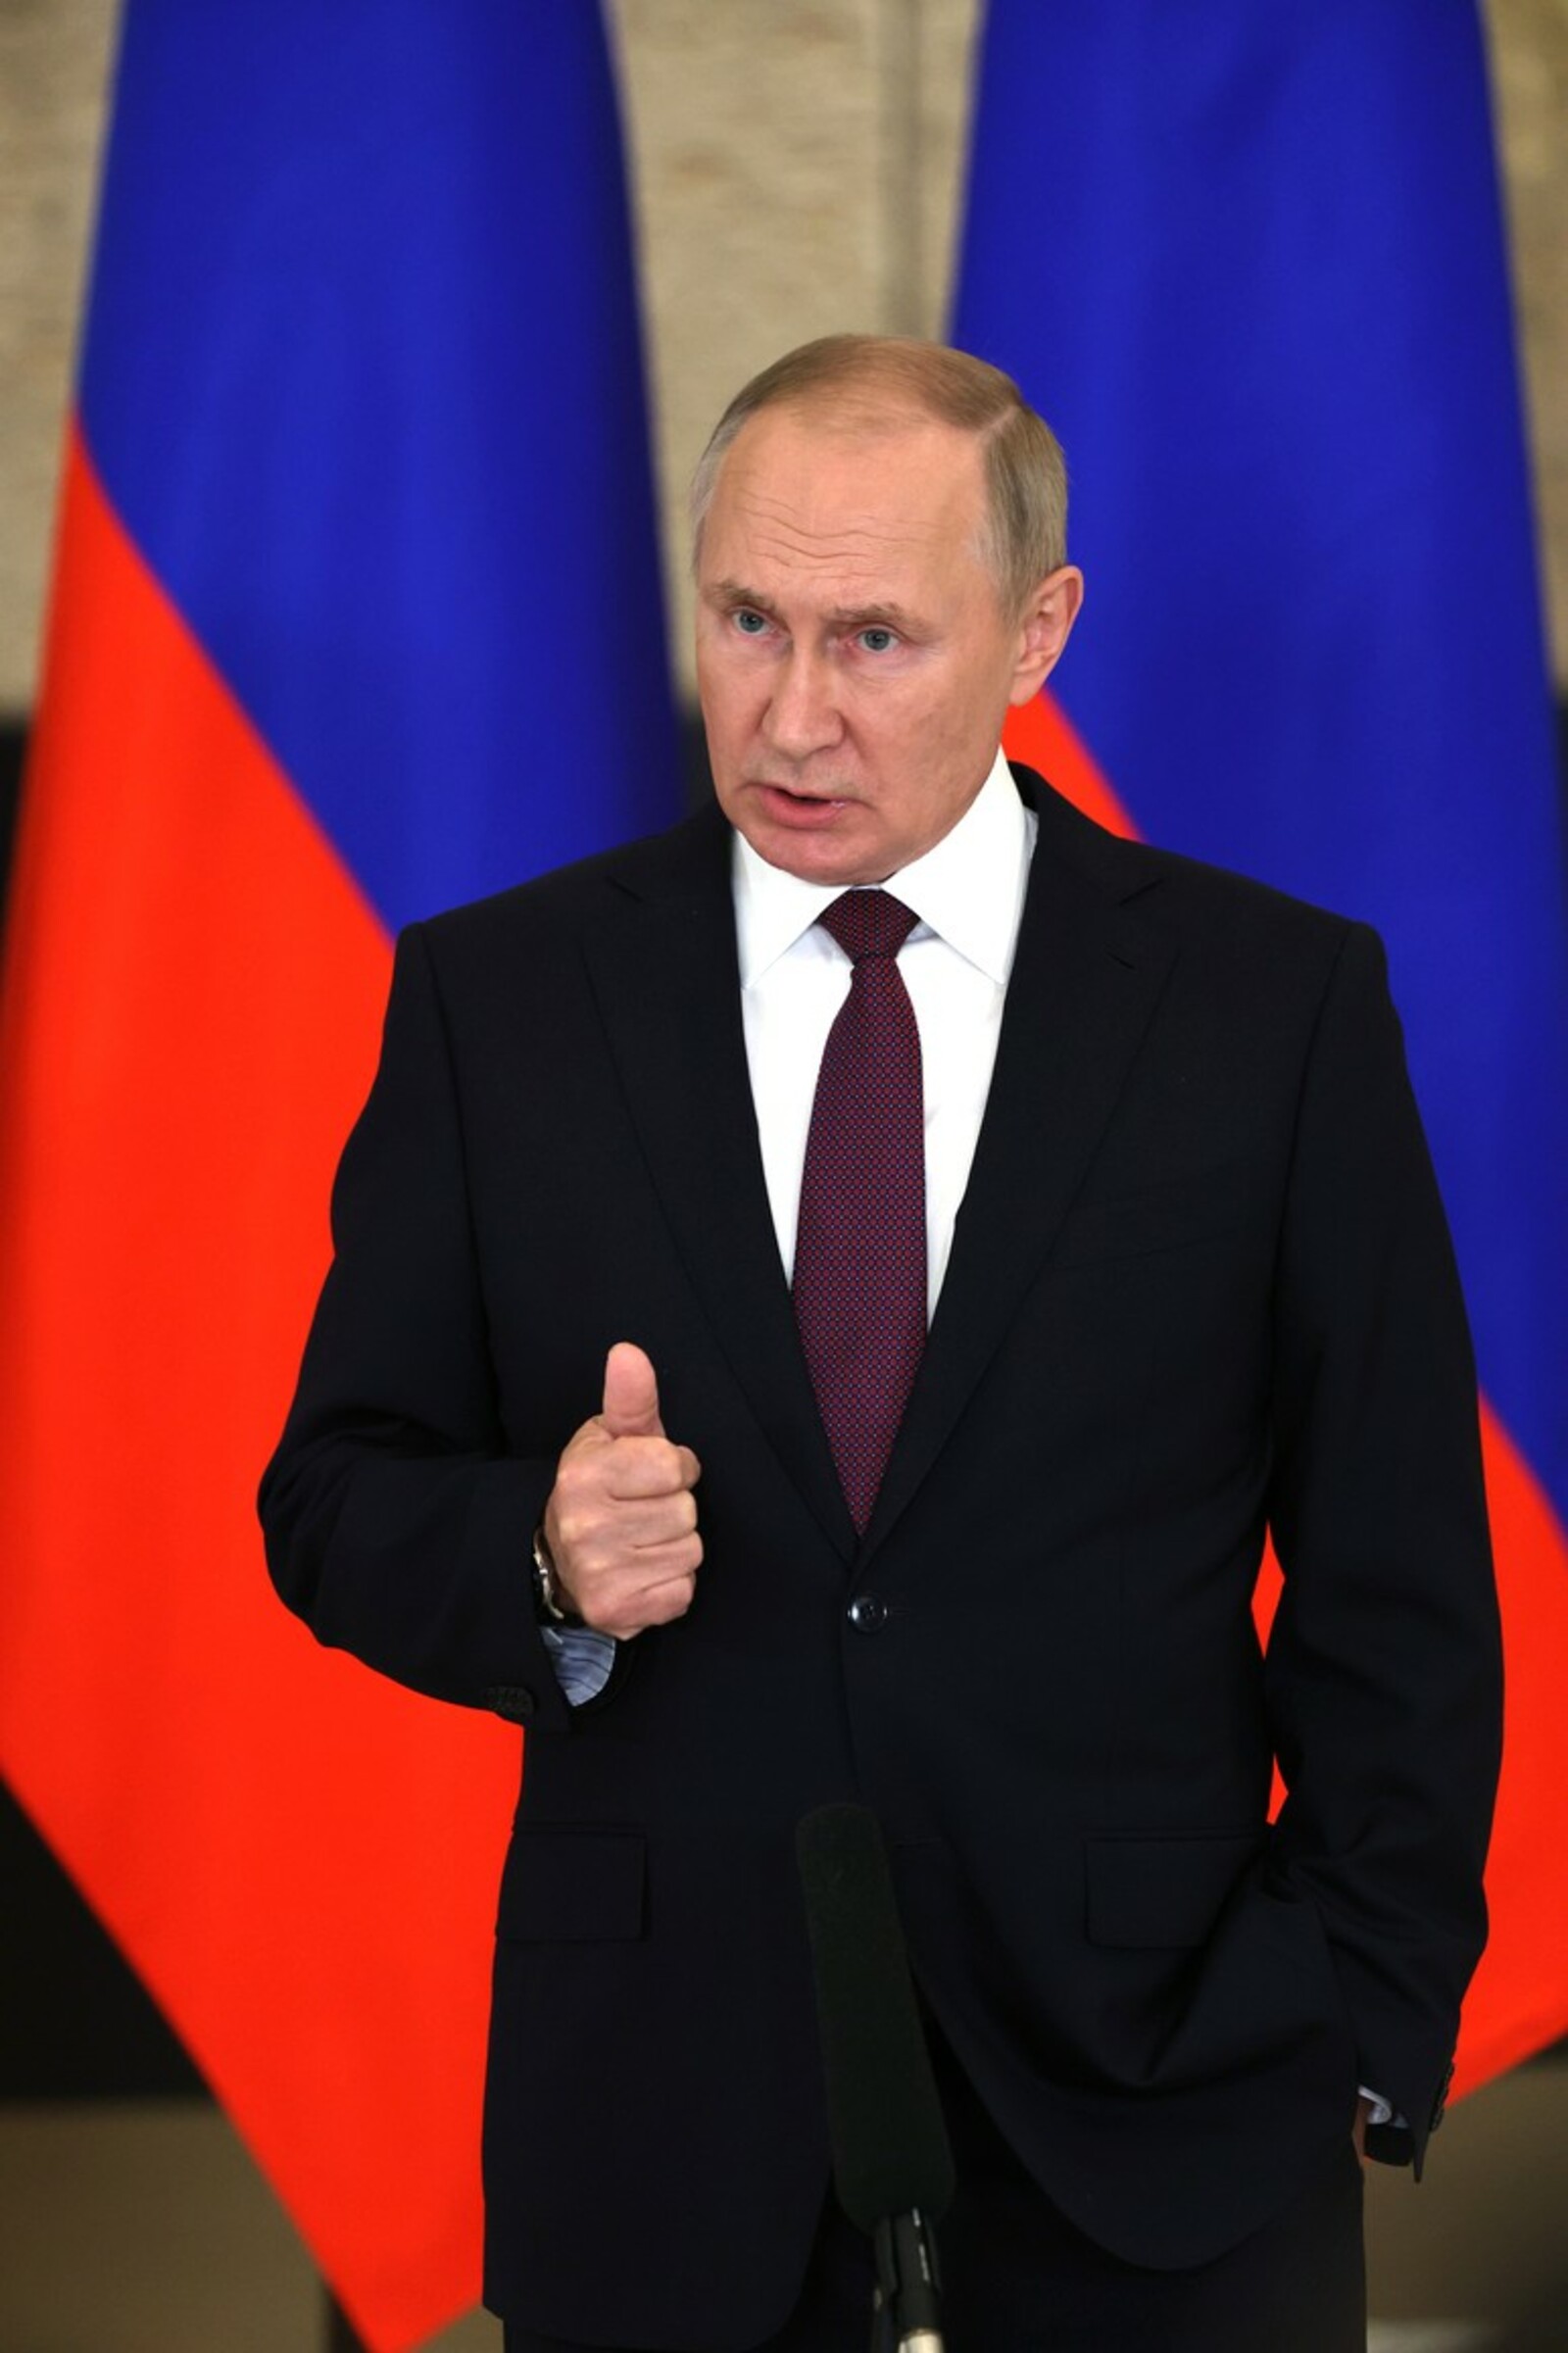 Главное для России, по мнению Владимира Путина, экономическое развитие